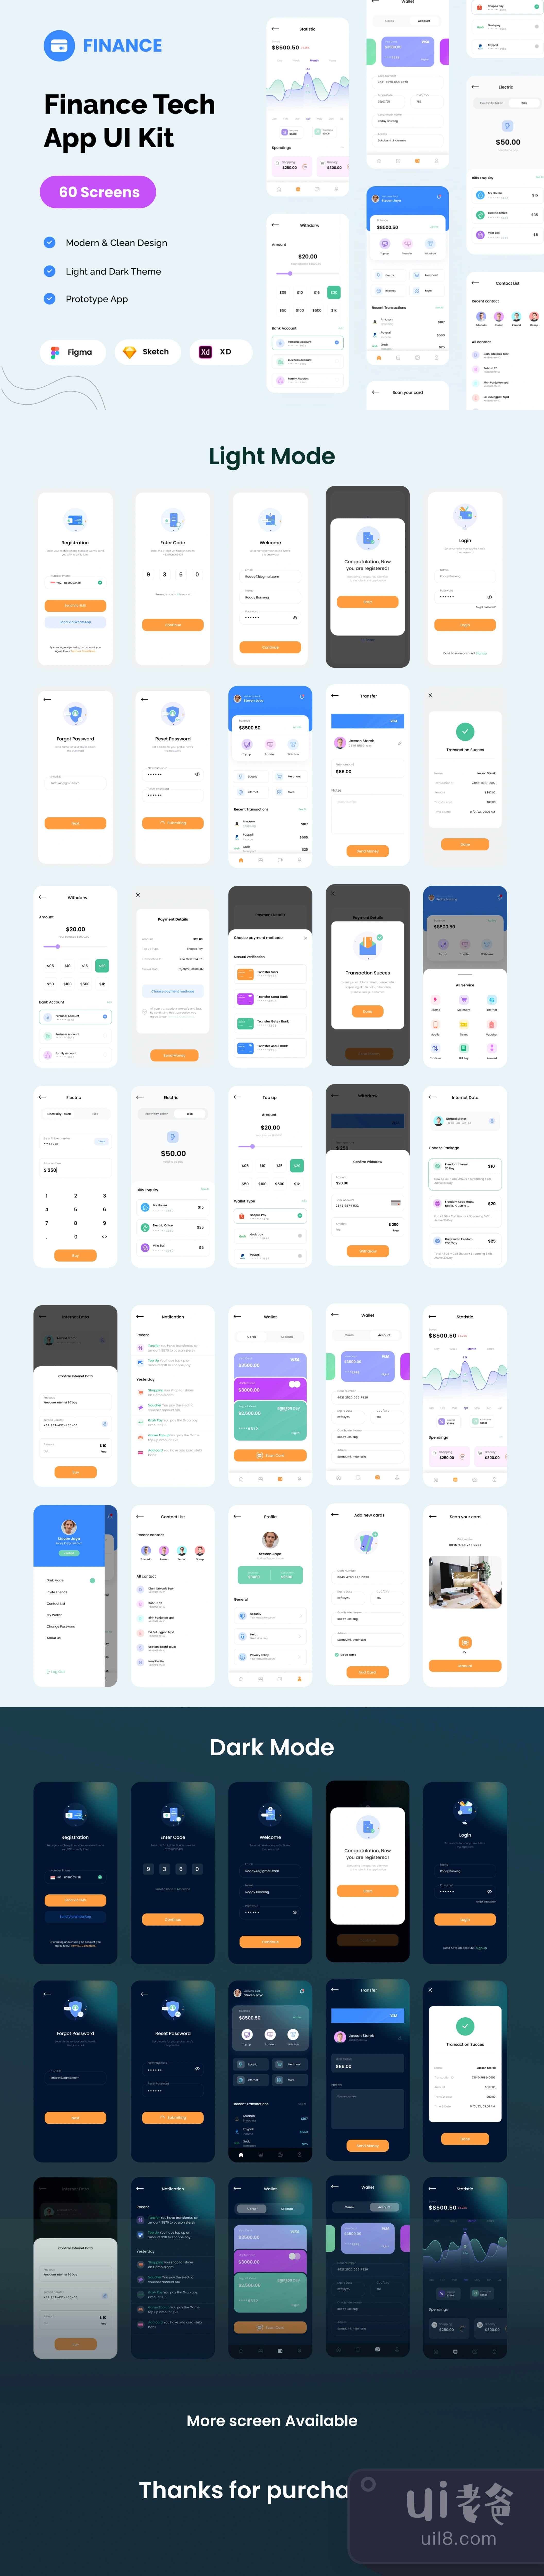 金融科技应用UI包 (Fintech App Ui Kit)插图